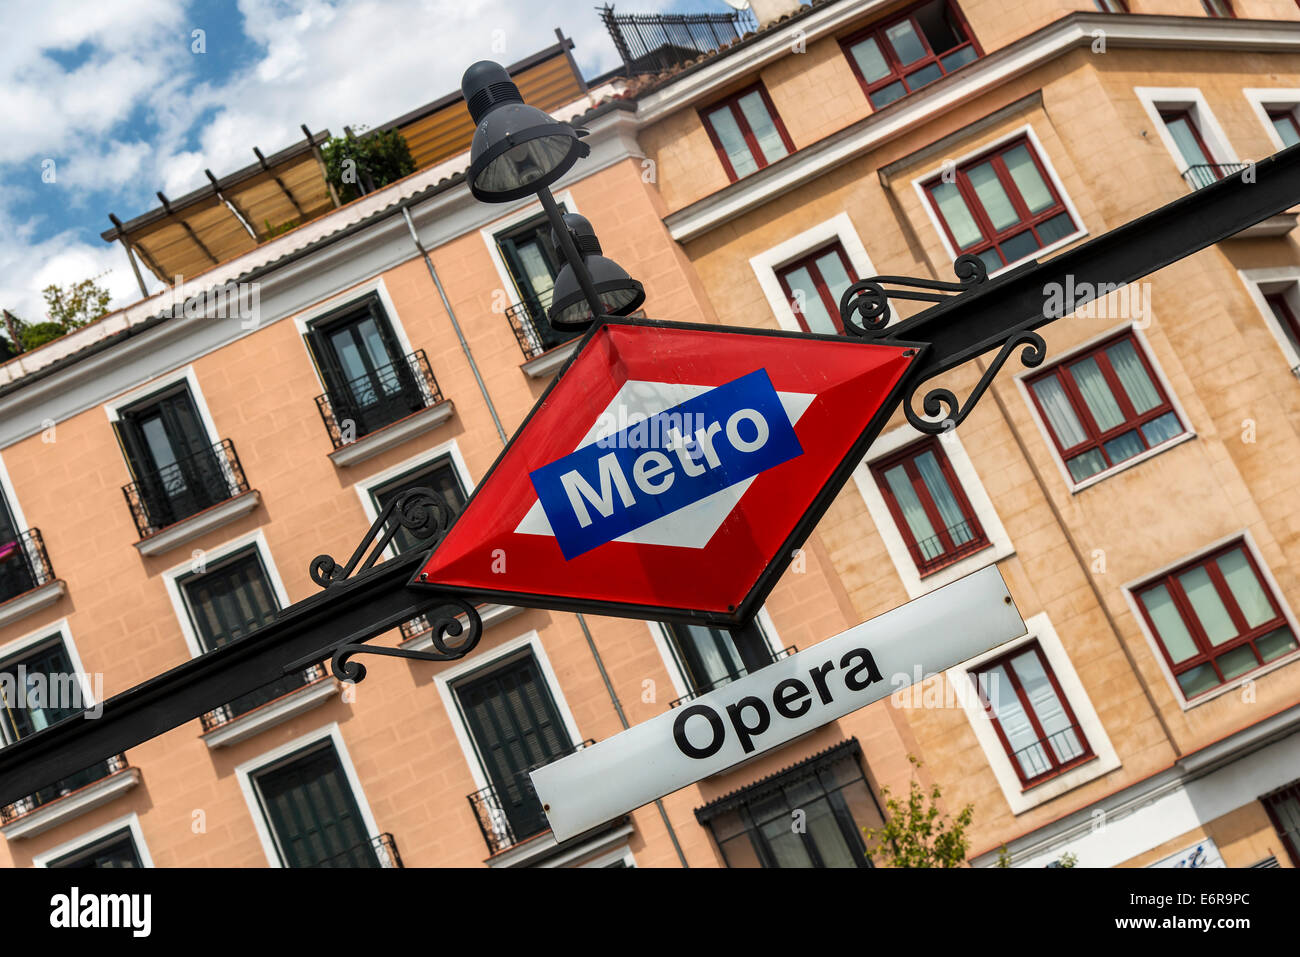 Típico signo de metro en la estación Opera, Madrid, Comunidad de Madrid, España Foto de stock